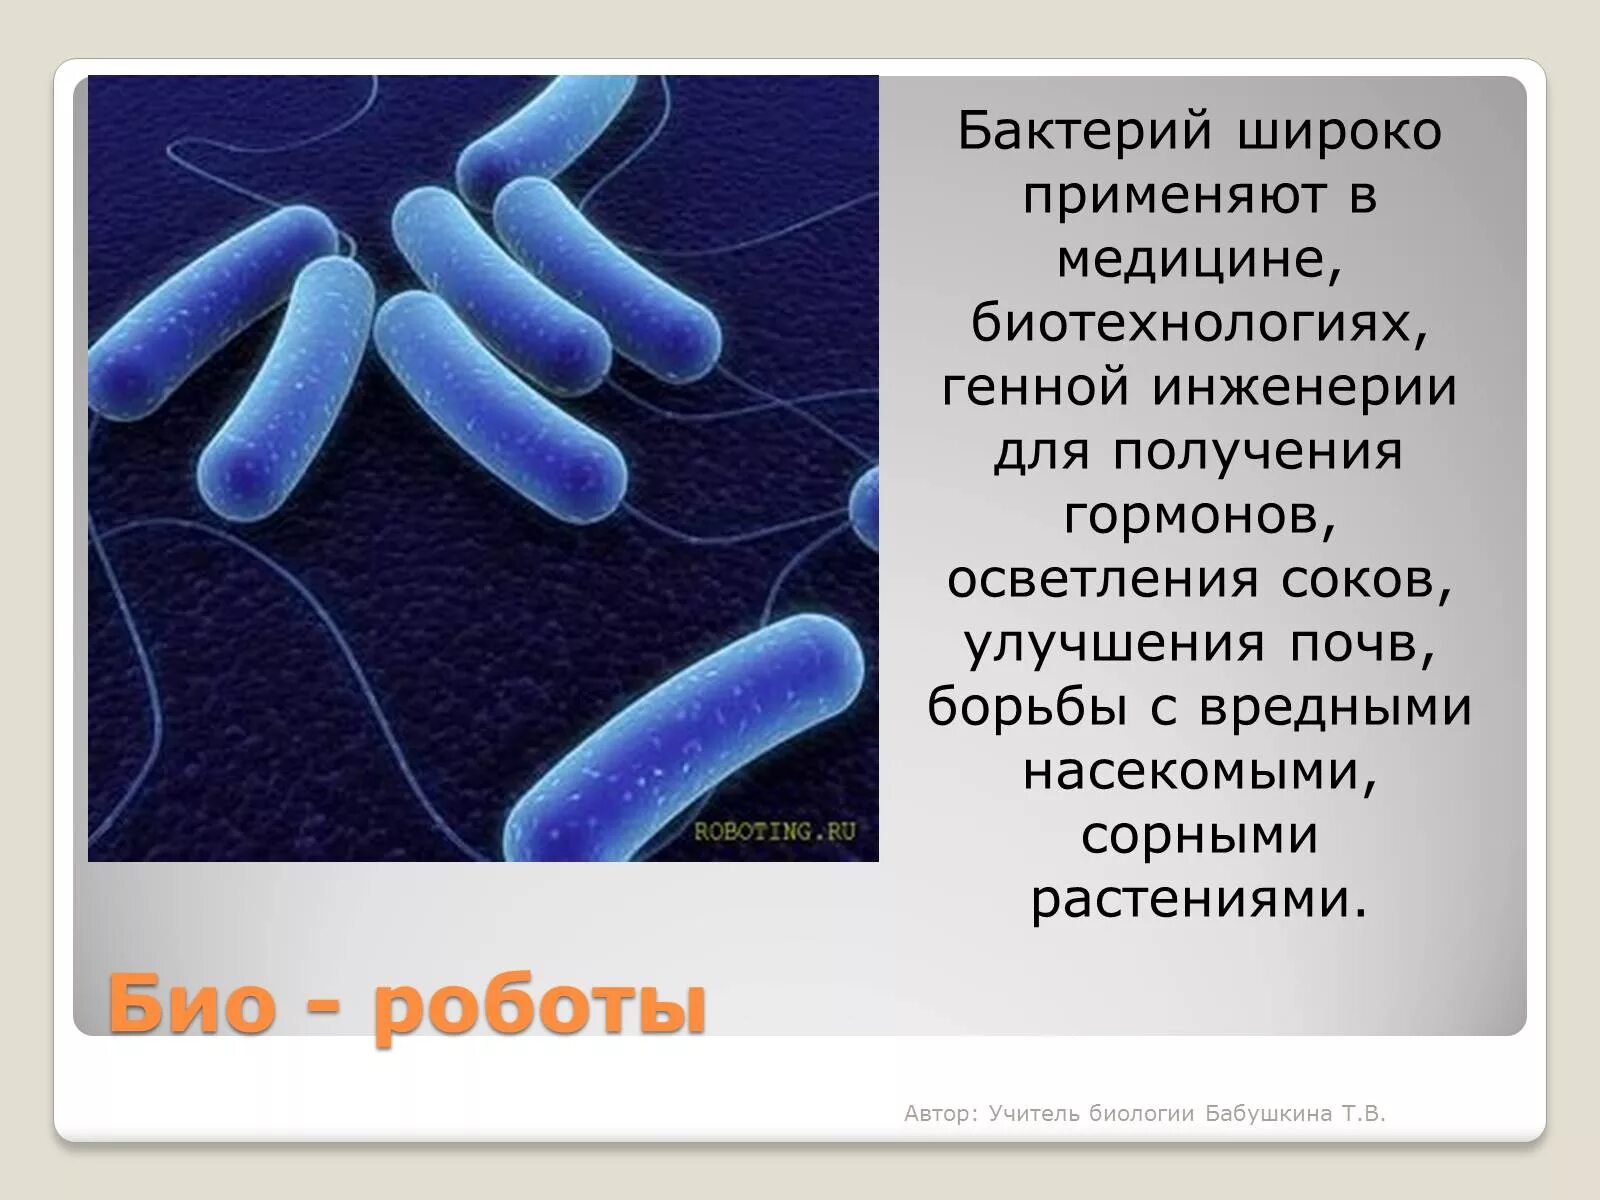 Микроорганизмы используемые в биотехнологии. Бактерии в биотехнологии. Биотехнология микроорганизмов. Бактерии и вирусы в биотехнологиях. Микроорганизмы в медицине.